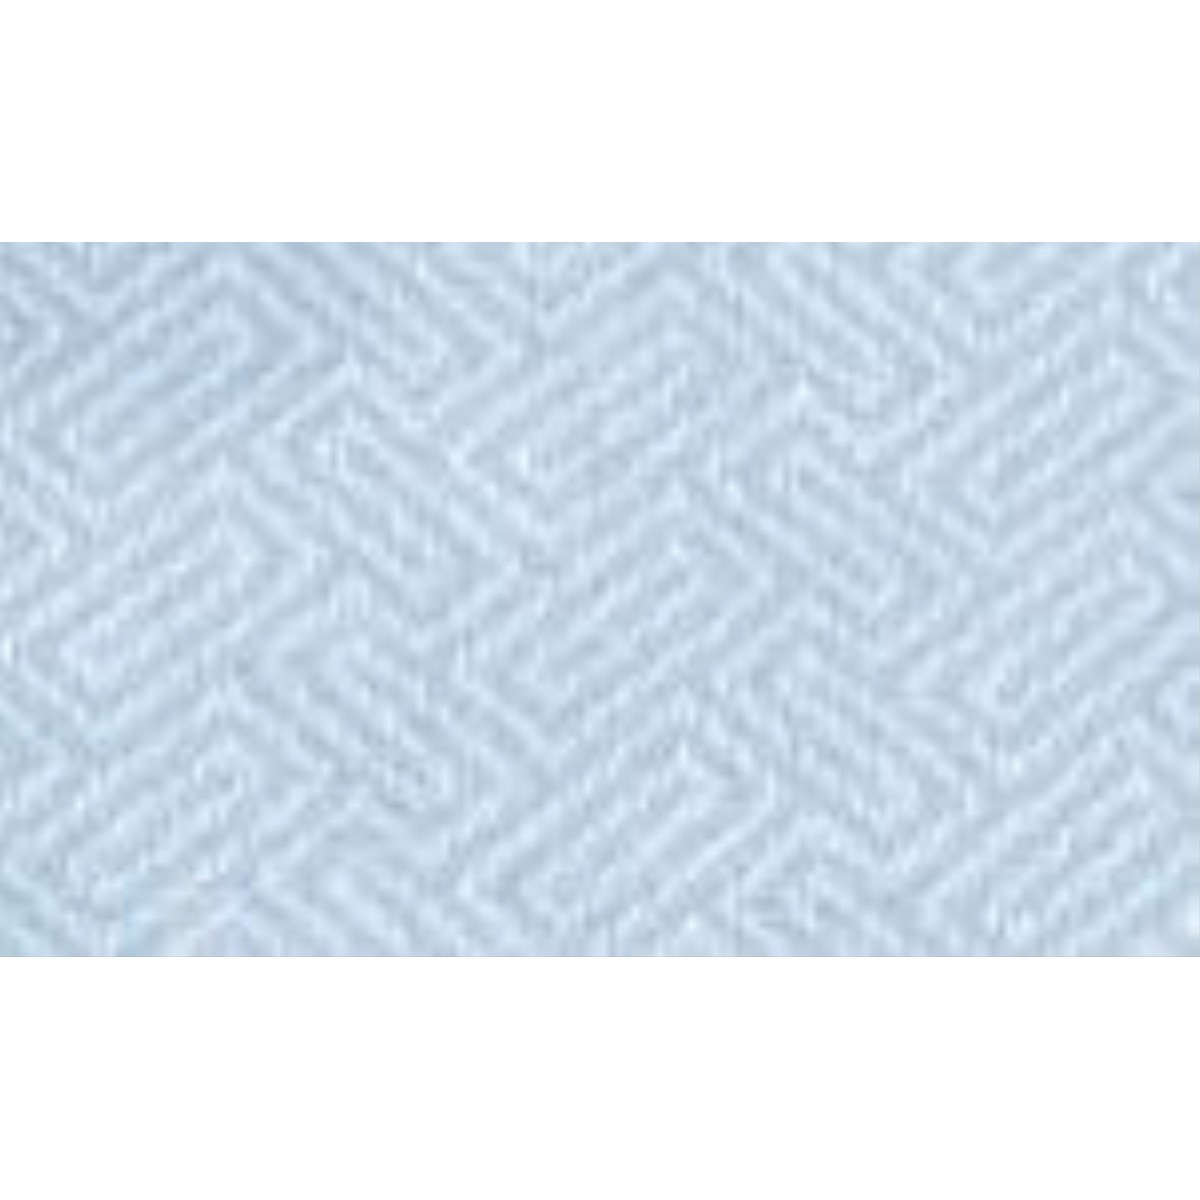  BUREL Etole en laine Maze 200x80cm Bleu pastel 200x80cm